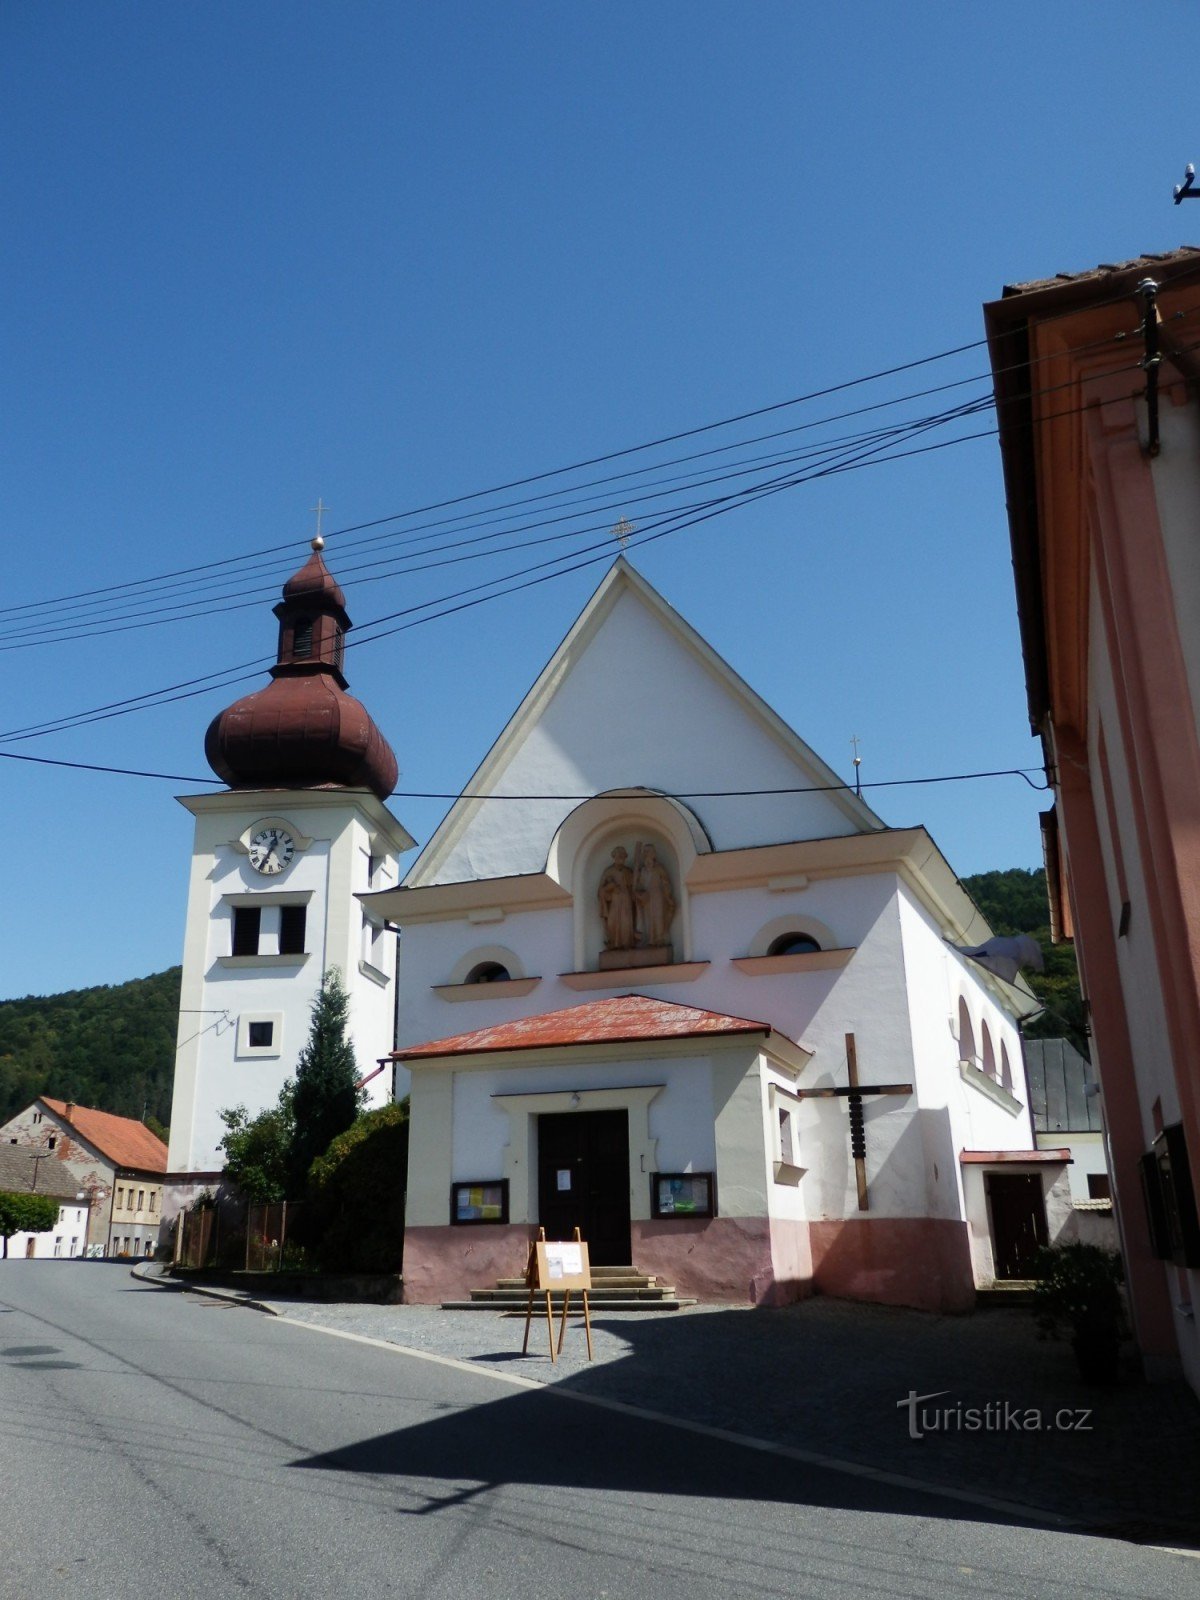 Church of St. Peter and Paul in Štěpánov nad Svratkou